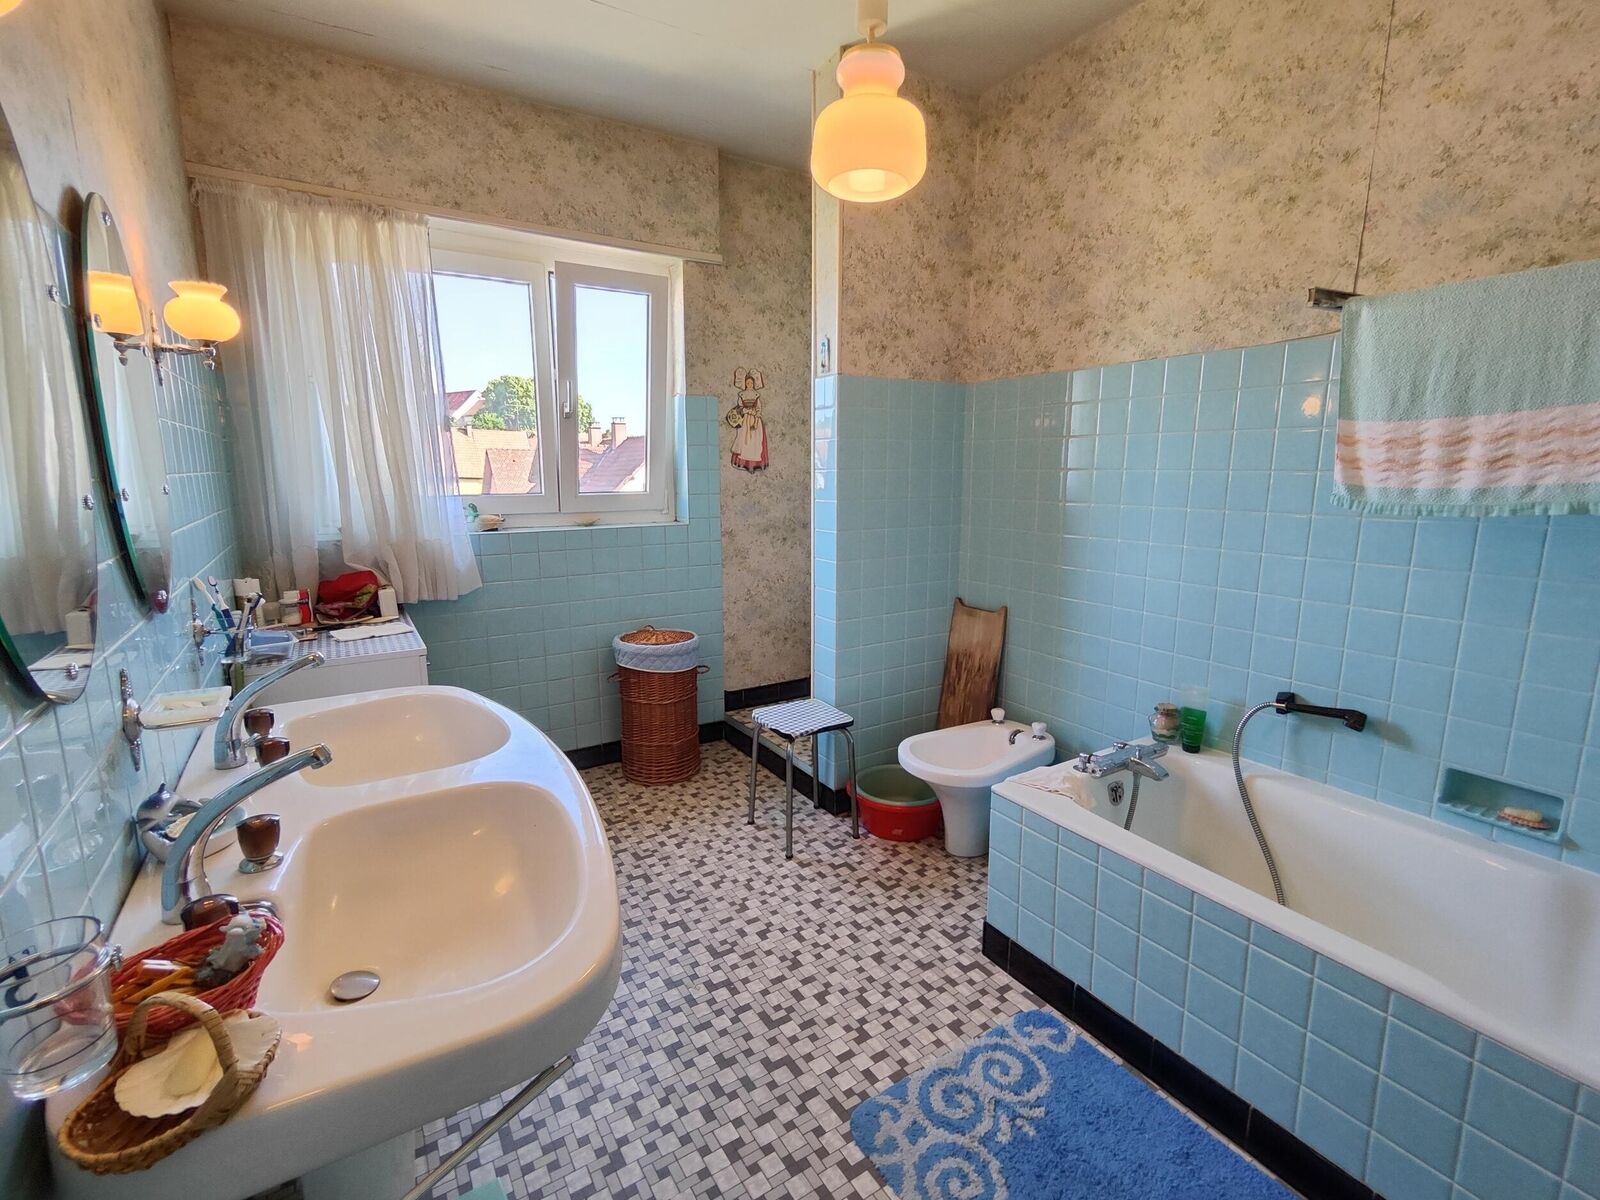 Charmante maison à Hochstatt offrant un potentiel de rénovation - salle de bain